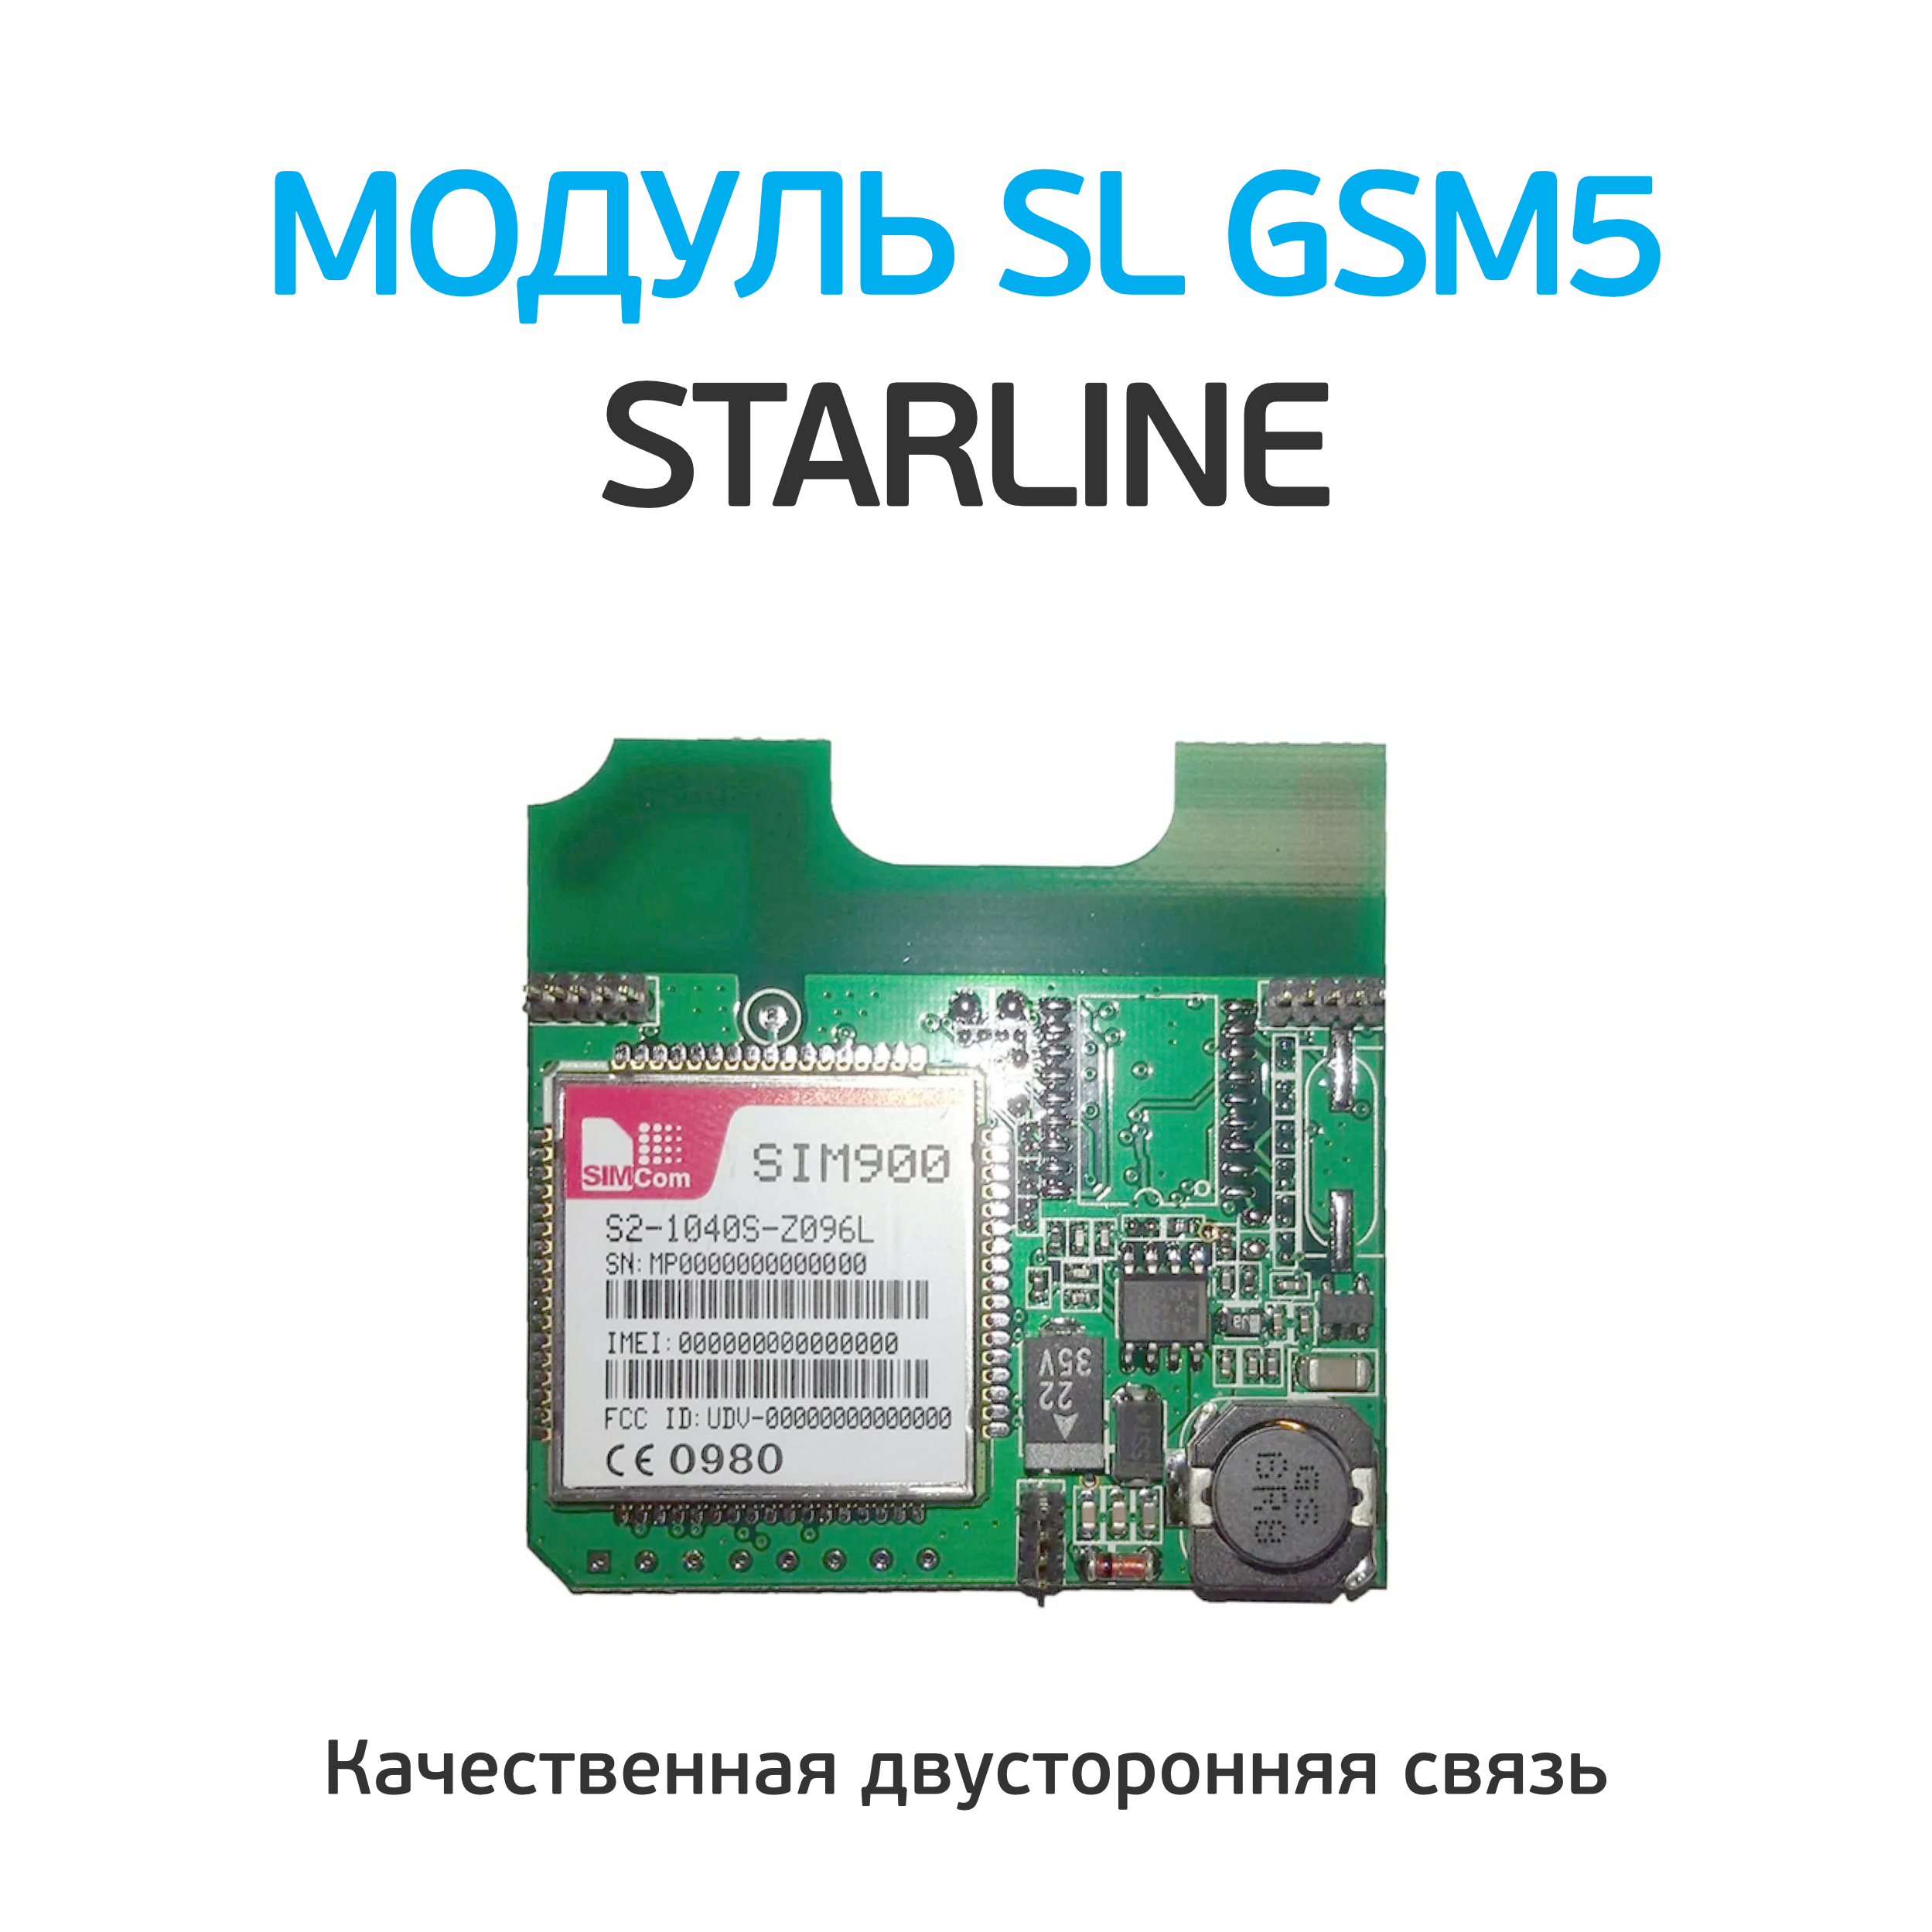 Starline gsm цена. Модуль STARLINE GSM-5 мастер. STARLINE gsm5 модуль. Старлайн модуль GSM мастер. Модуль STARLINE 2can+2lin мастер.